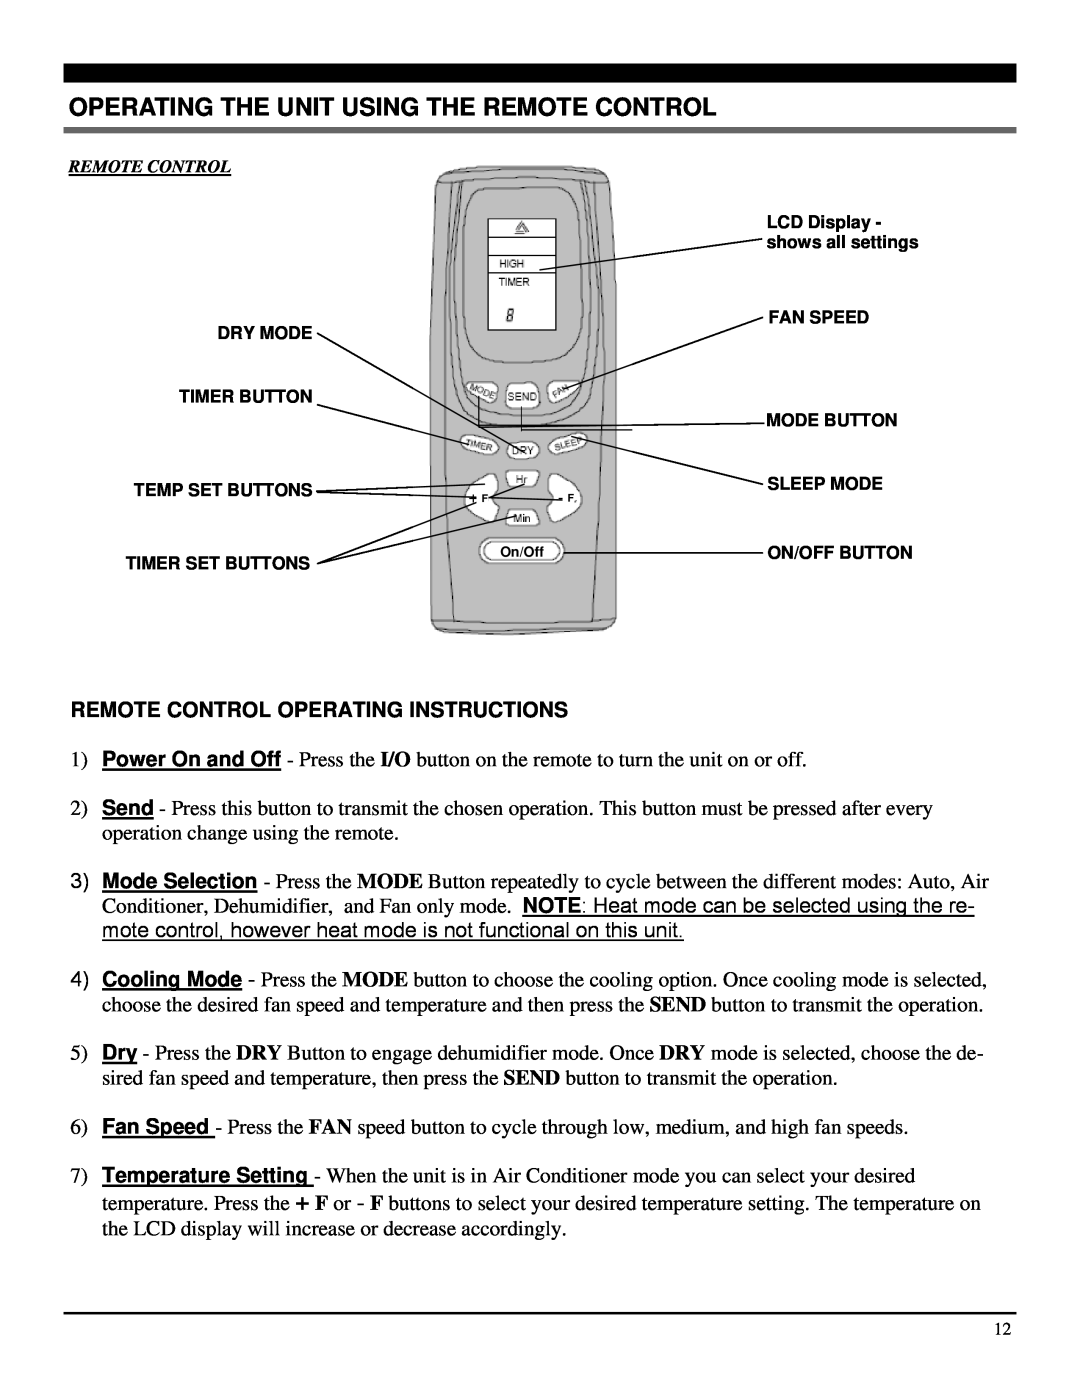 Soleus Air PE4-11R-03 manual Operating The Unit Using The Remote Control, Remote Control Operating Instructions 